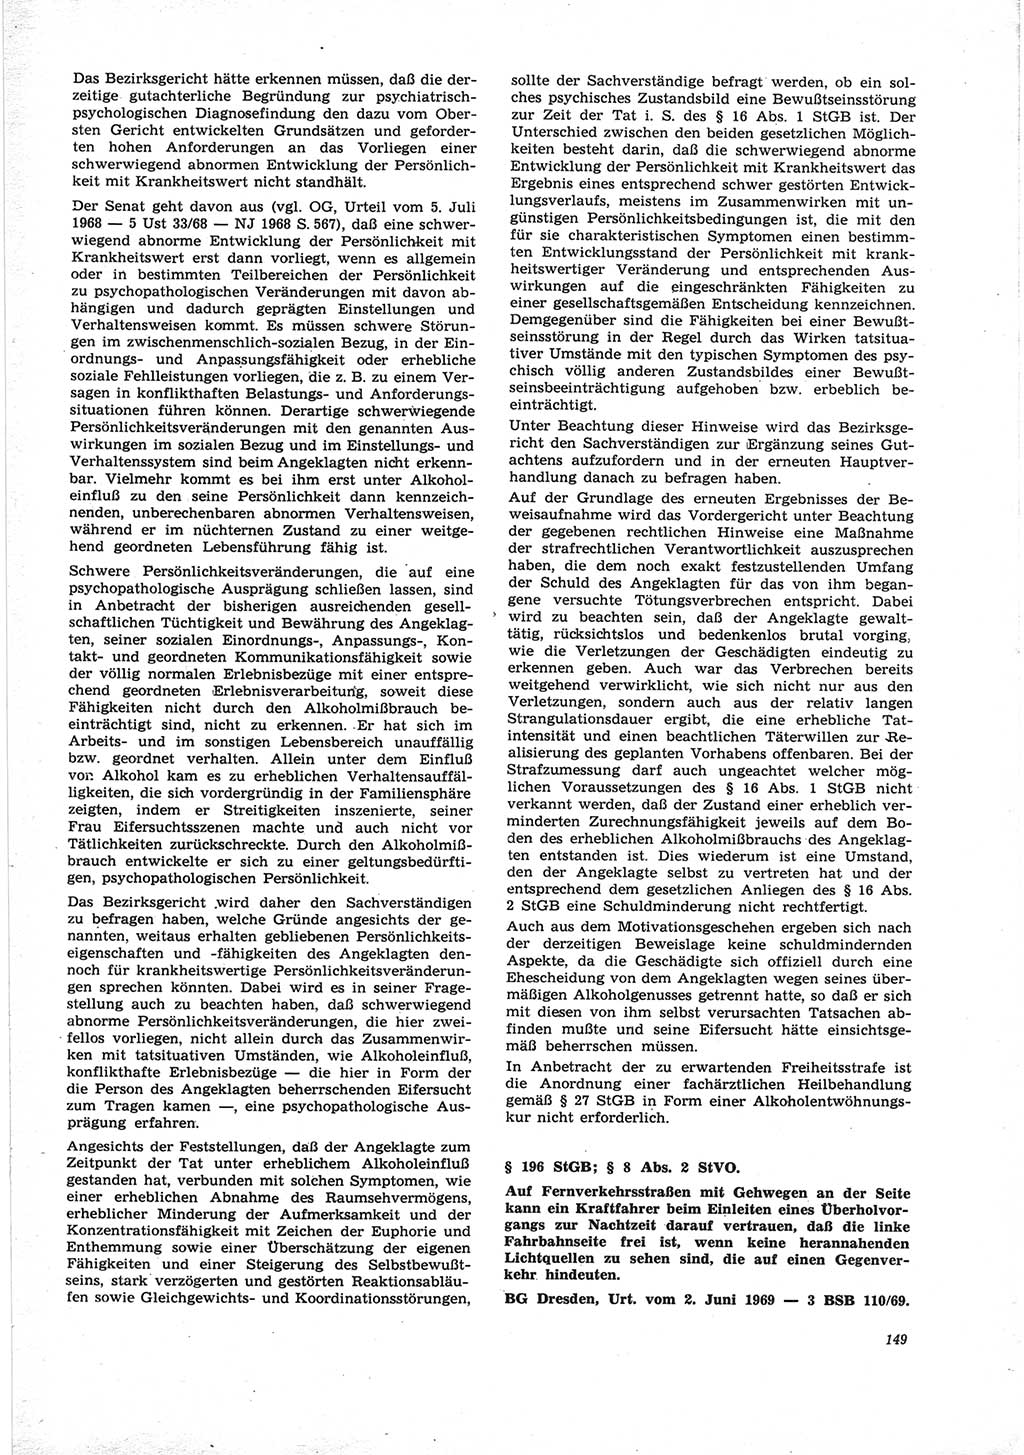 Neue Justiz (NJ), Zeitschrift für Recht und Rechtswissenschaft [Deutsche Demokratische Republik (DDR)], 25. Jahrgang 1971, Seite 149 (NJ DDR 1971, S. 149)